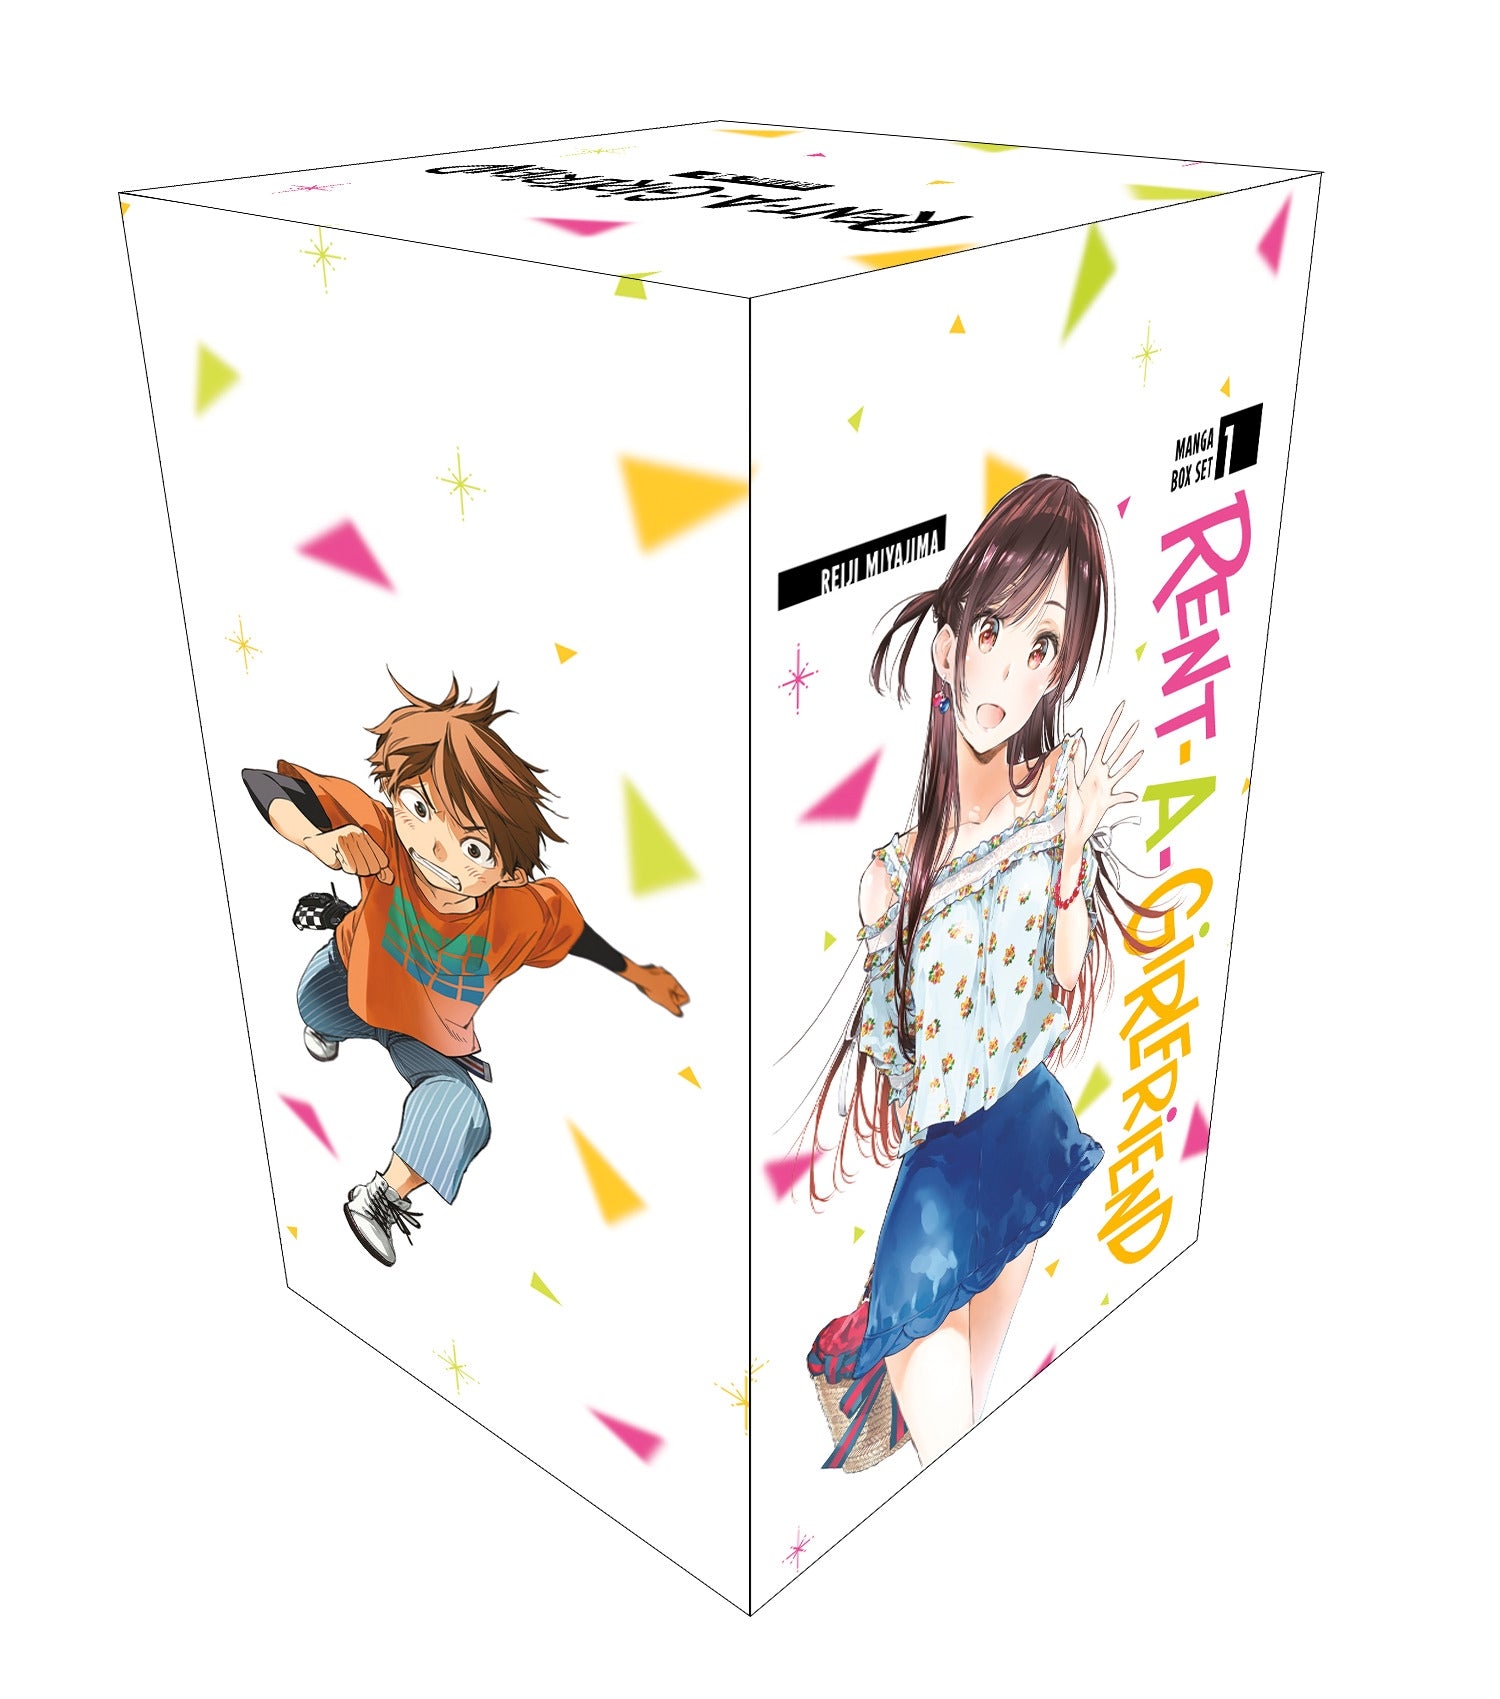 Rent-A-Girlfriend Manga Box Set 1 - Manga Warehouse